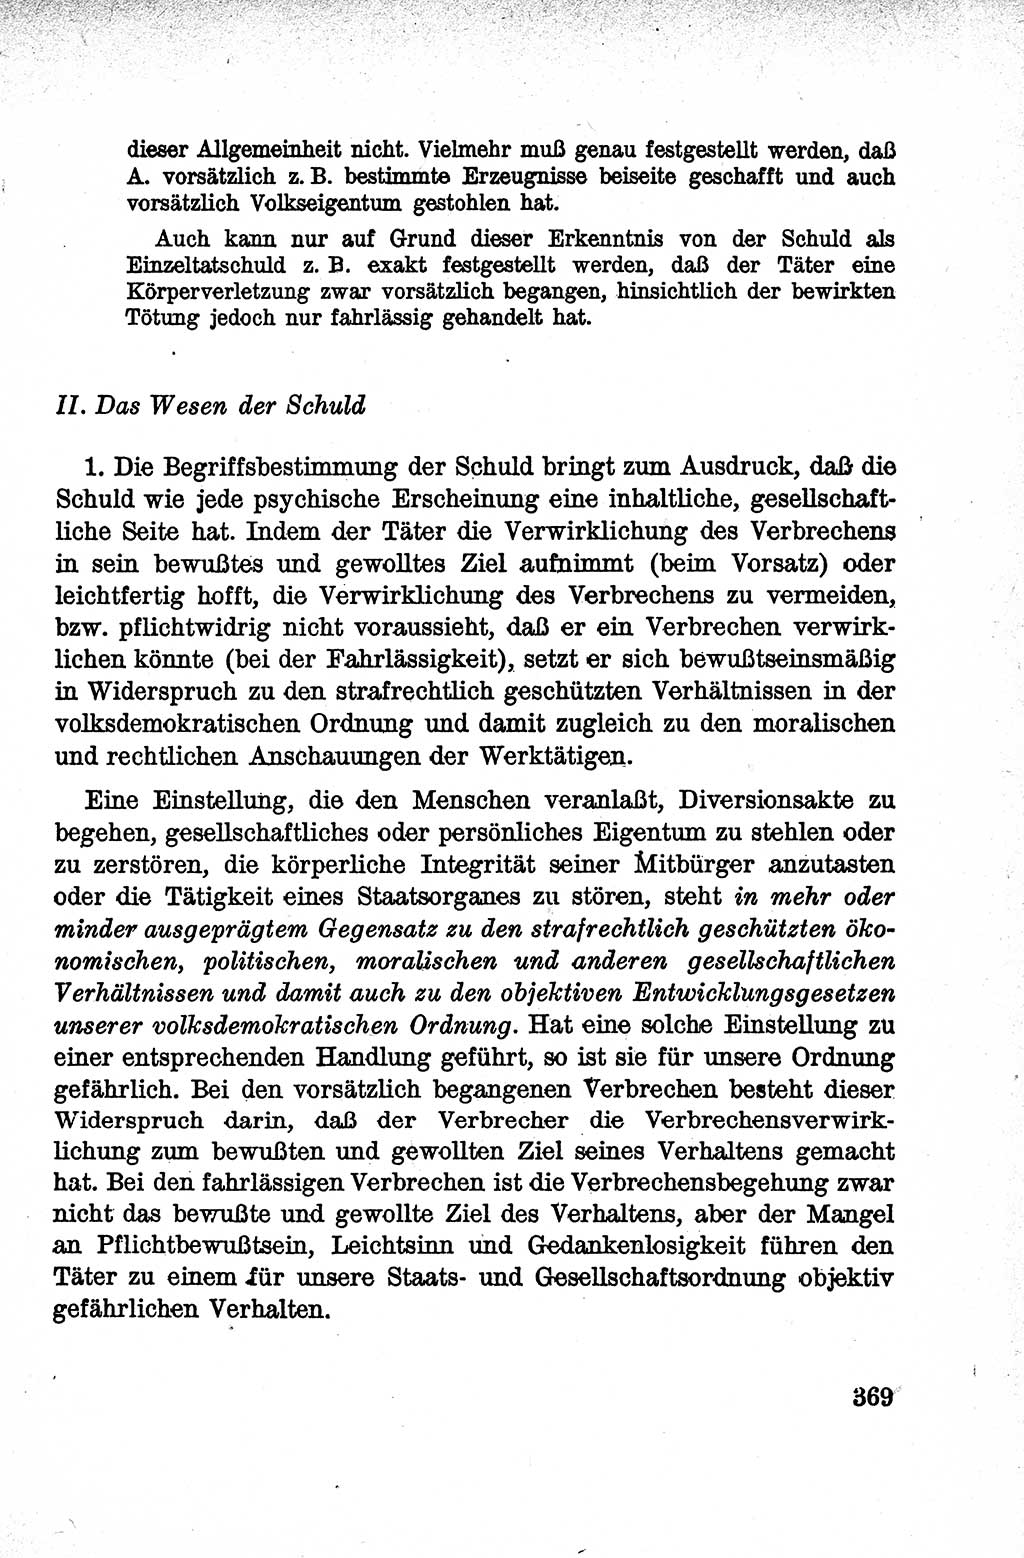 Lehrbuch des Strafrechts der Deutschen Demokratischen Republik (DDR), Allgemeiner Teil 1959, Seite 369 (Lb. Strafr. DDR AT 1959, S. 369)